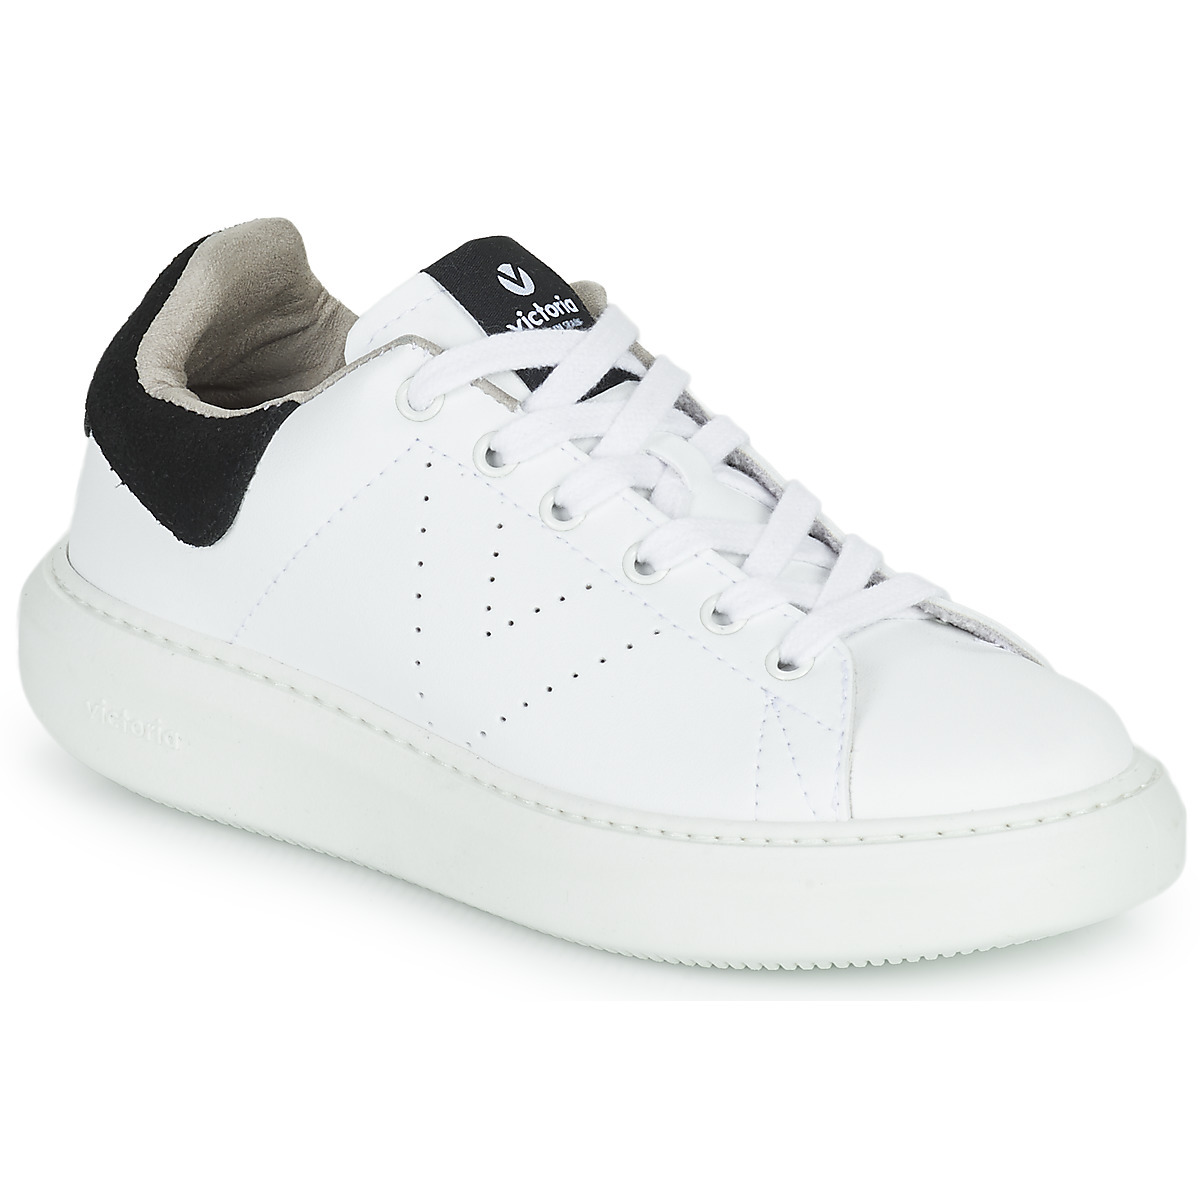 Sneakers - White - Victoria - Ladies - Spartoo GOOFASH